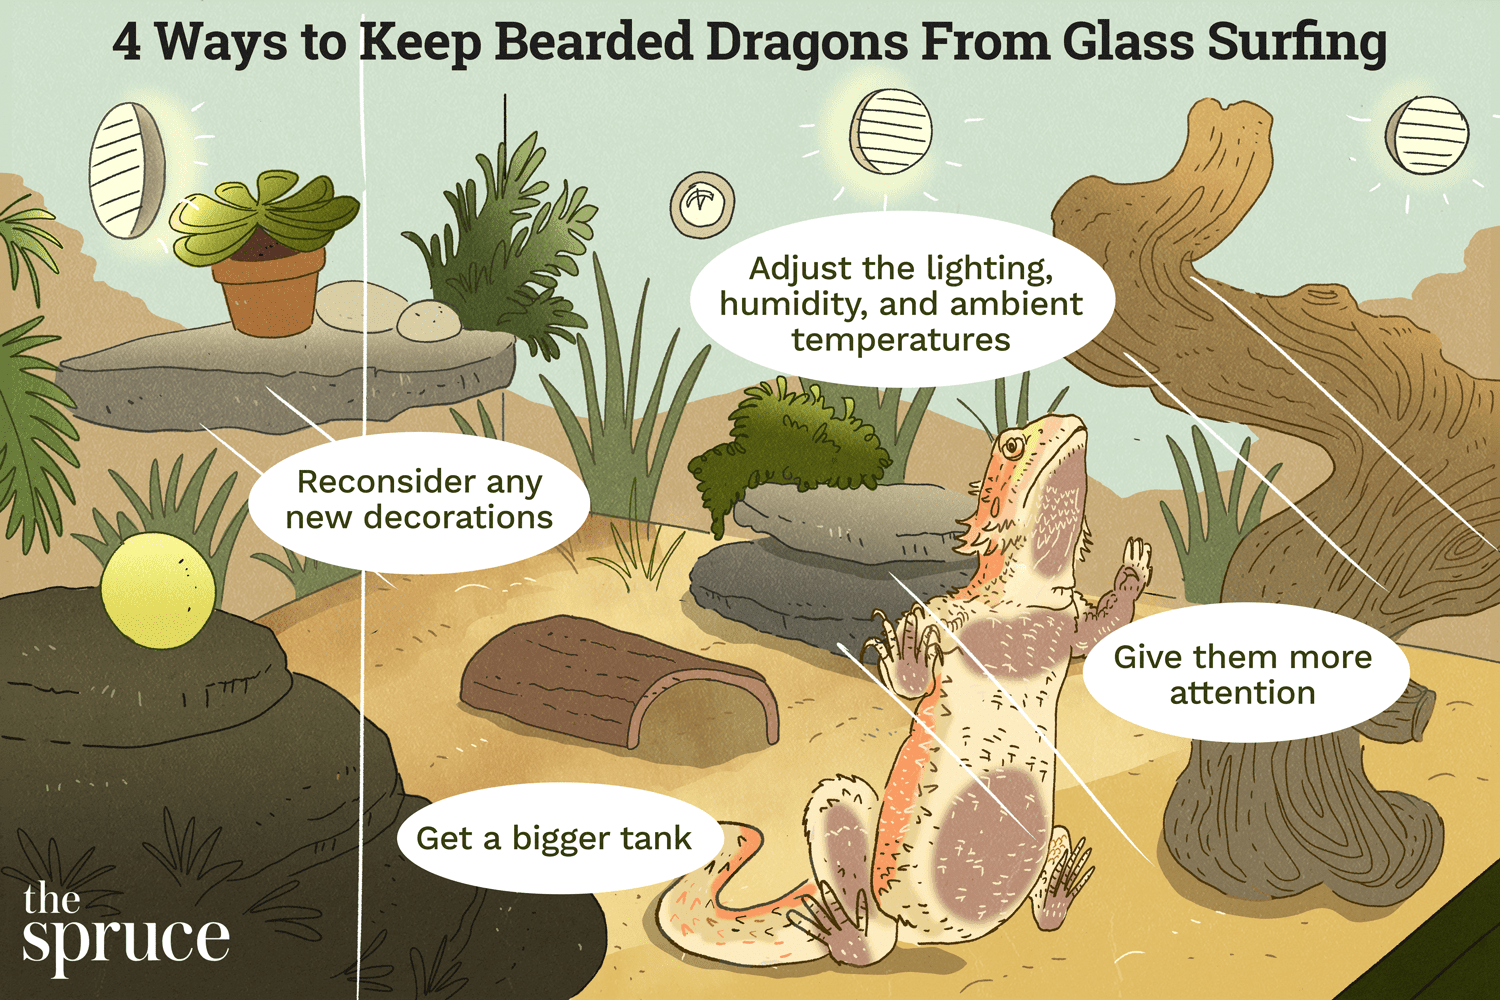 Comment arrêter le Glass Surfing chez Bearded Dragons